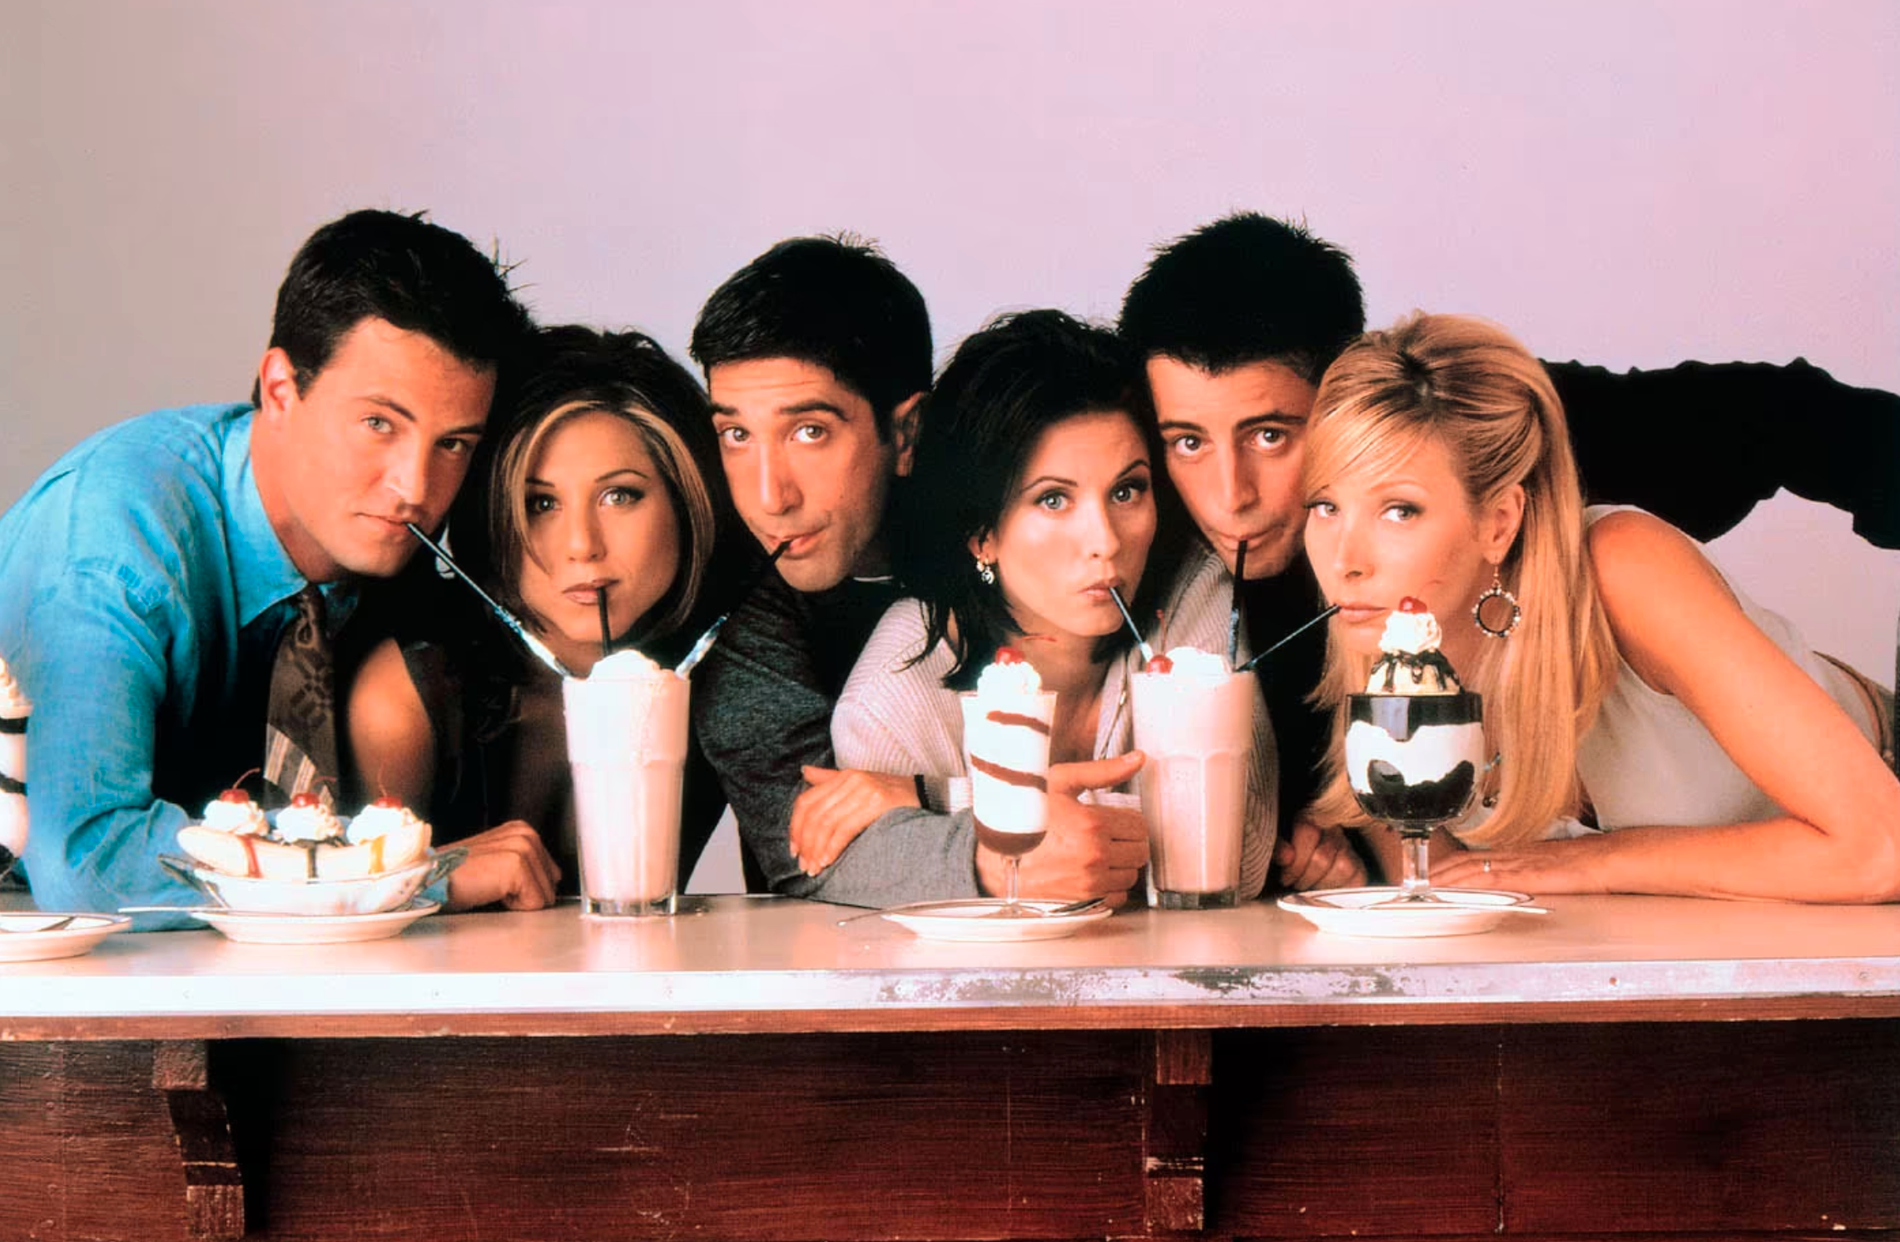 Kultserien ”Vänner” sändes mellan 1994 och 2004 och gjorde skådespelarna Matthew Perry, Jennifer Aniston, David Schwimmer, Courtney Cox, Matt Le Blanc och Lisa Kudrow världskända.